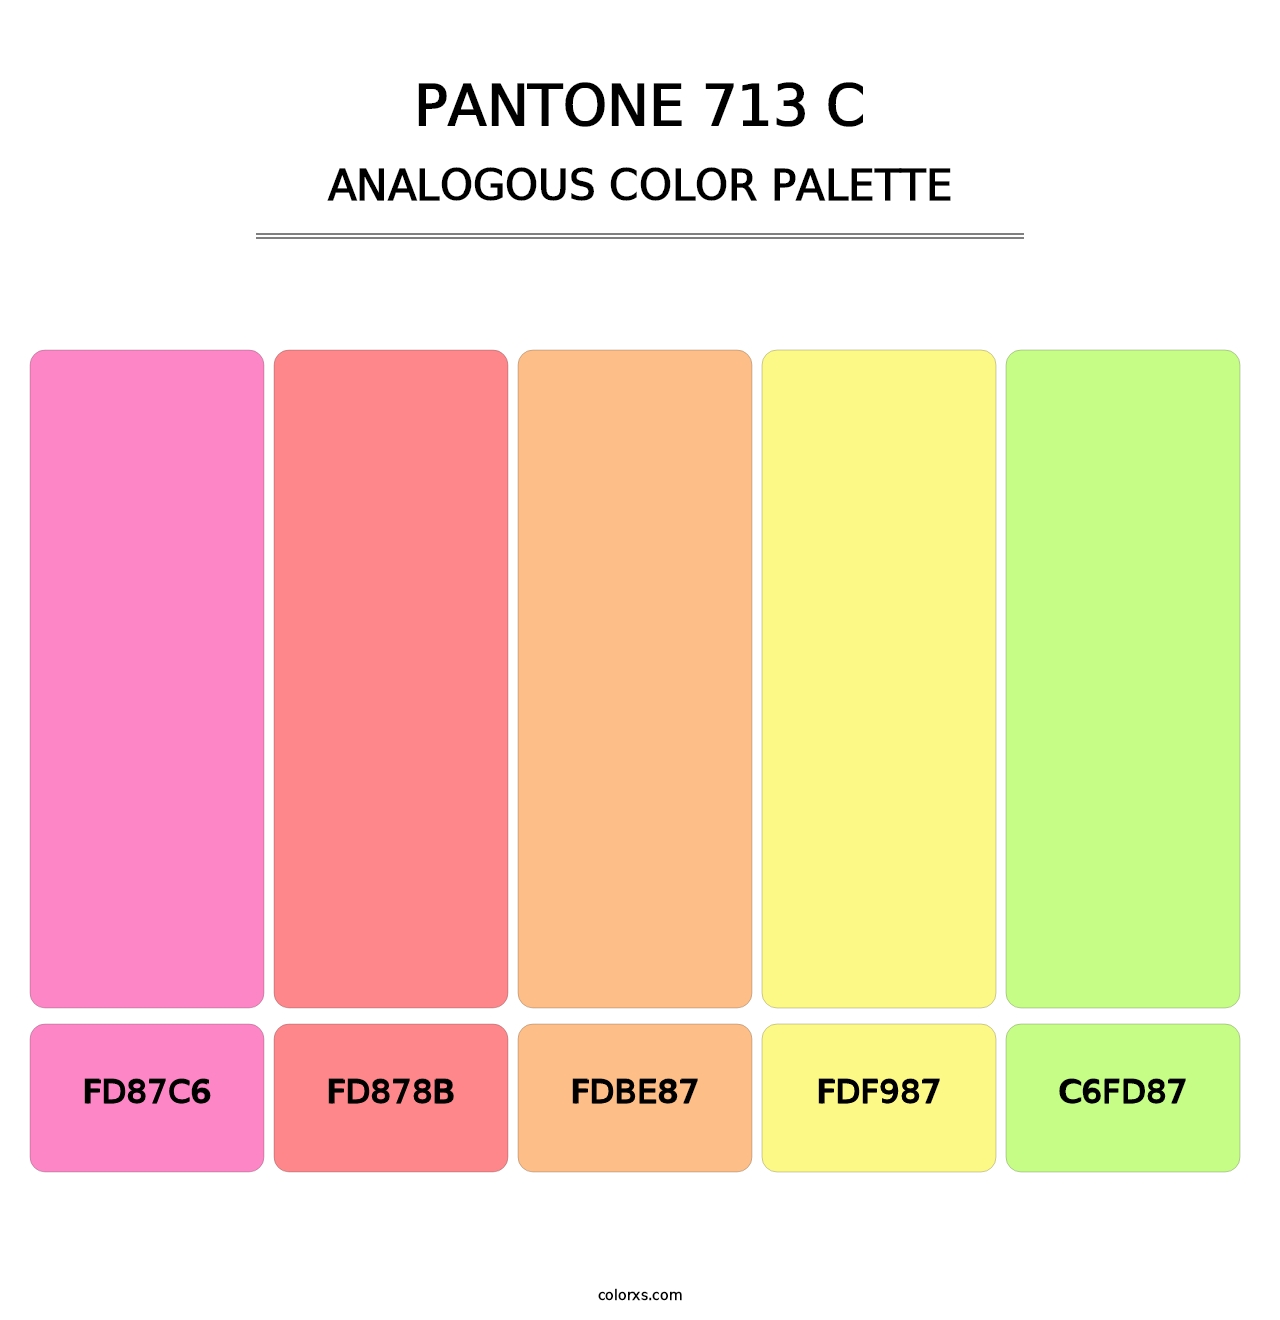 PANTONE 713 C - Analogous Color Palette